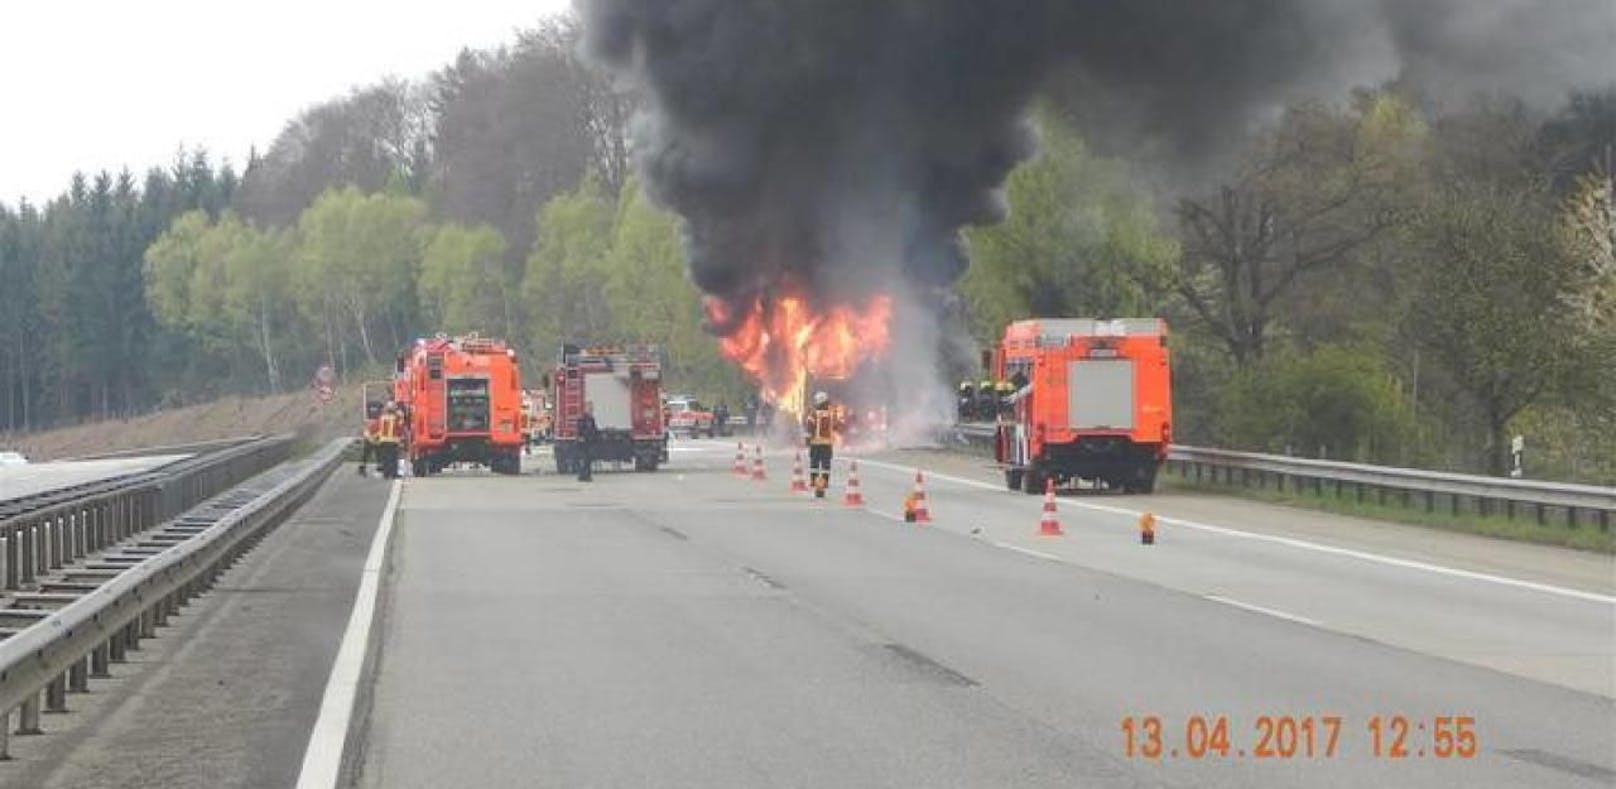 Wiener Reisebus wird auf Autobahn zum Feuerball